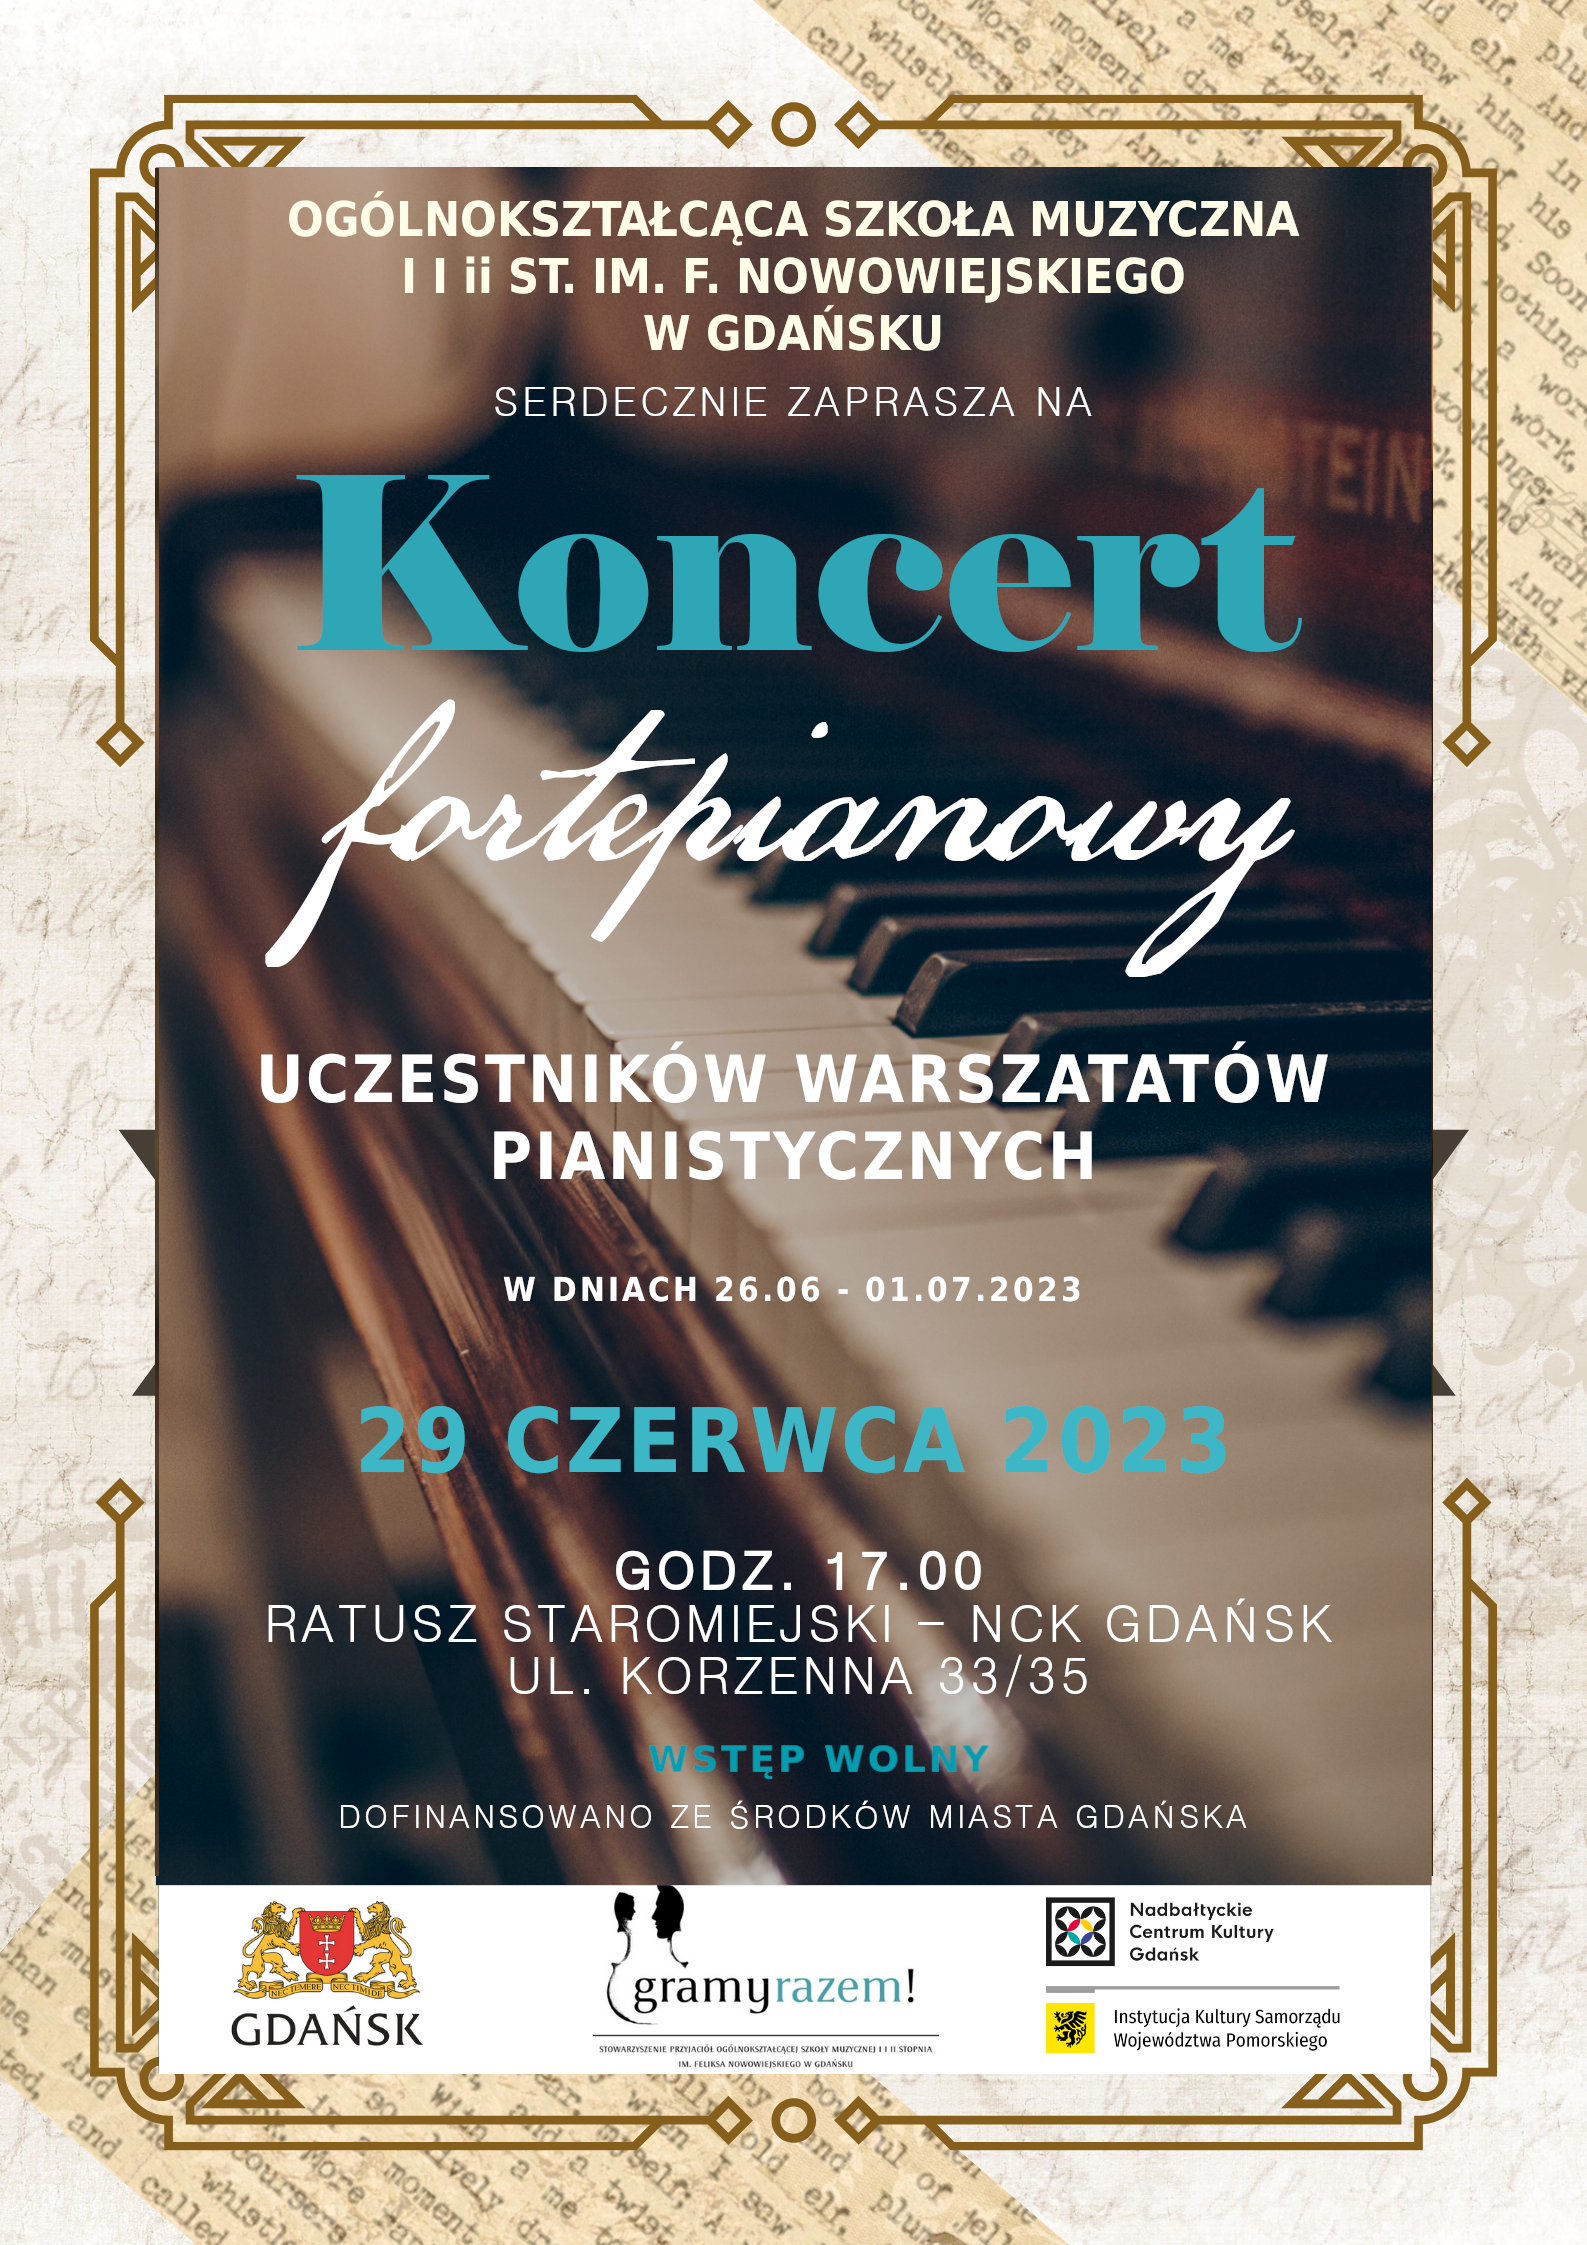 Plakat z informacjami dotyczącymi koncertu.